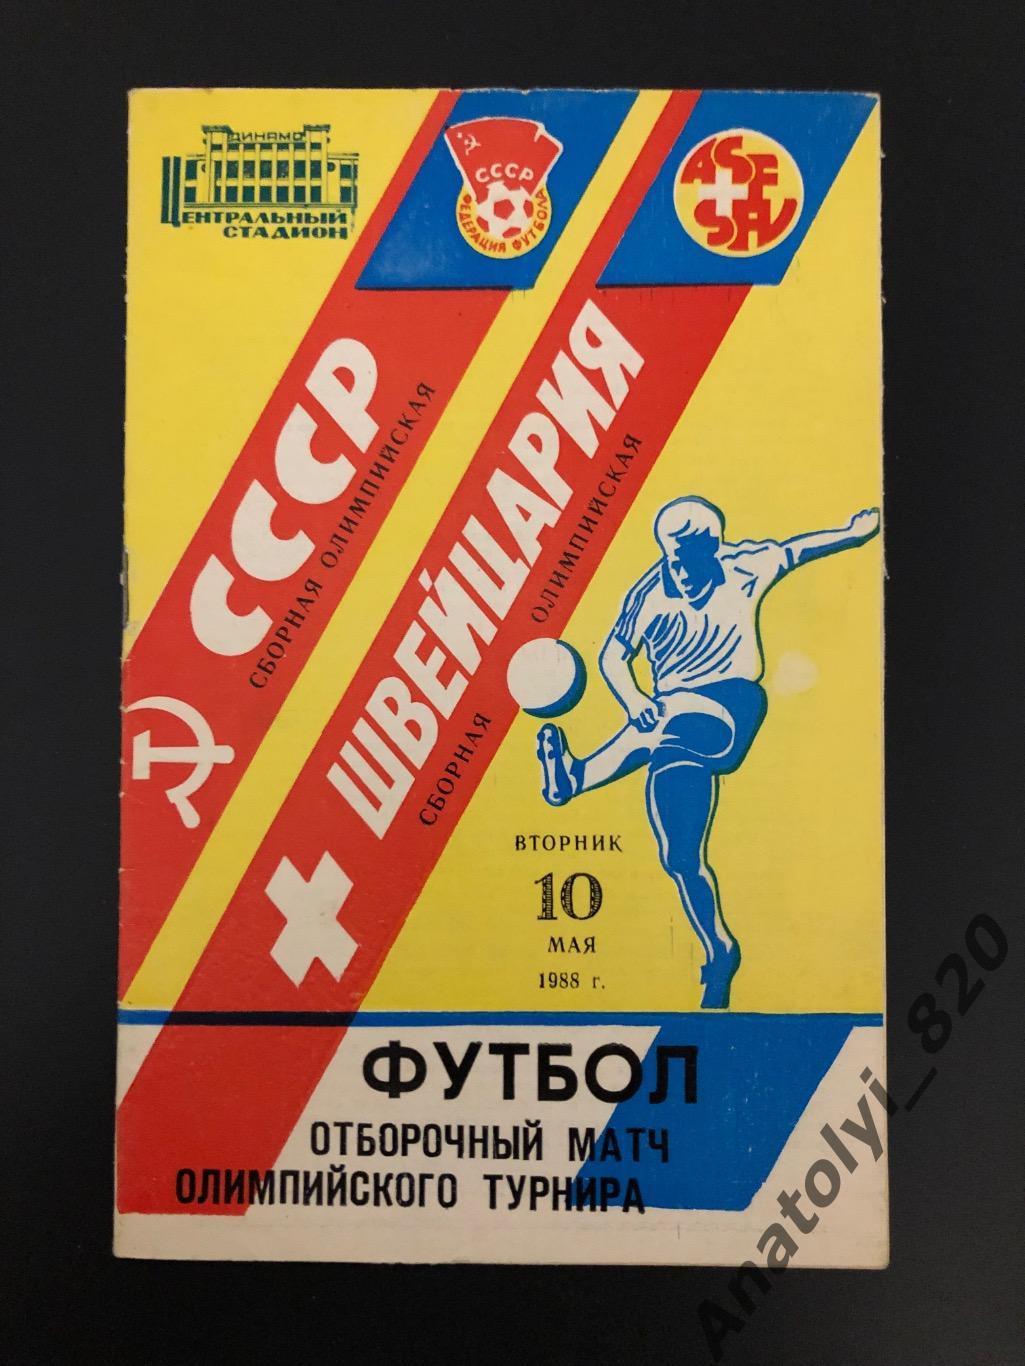 Сборная СССР - сборная Швейцарии, 10.05.1988